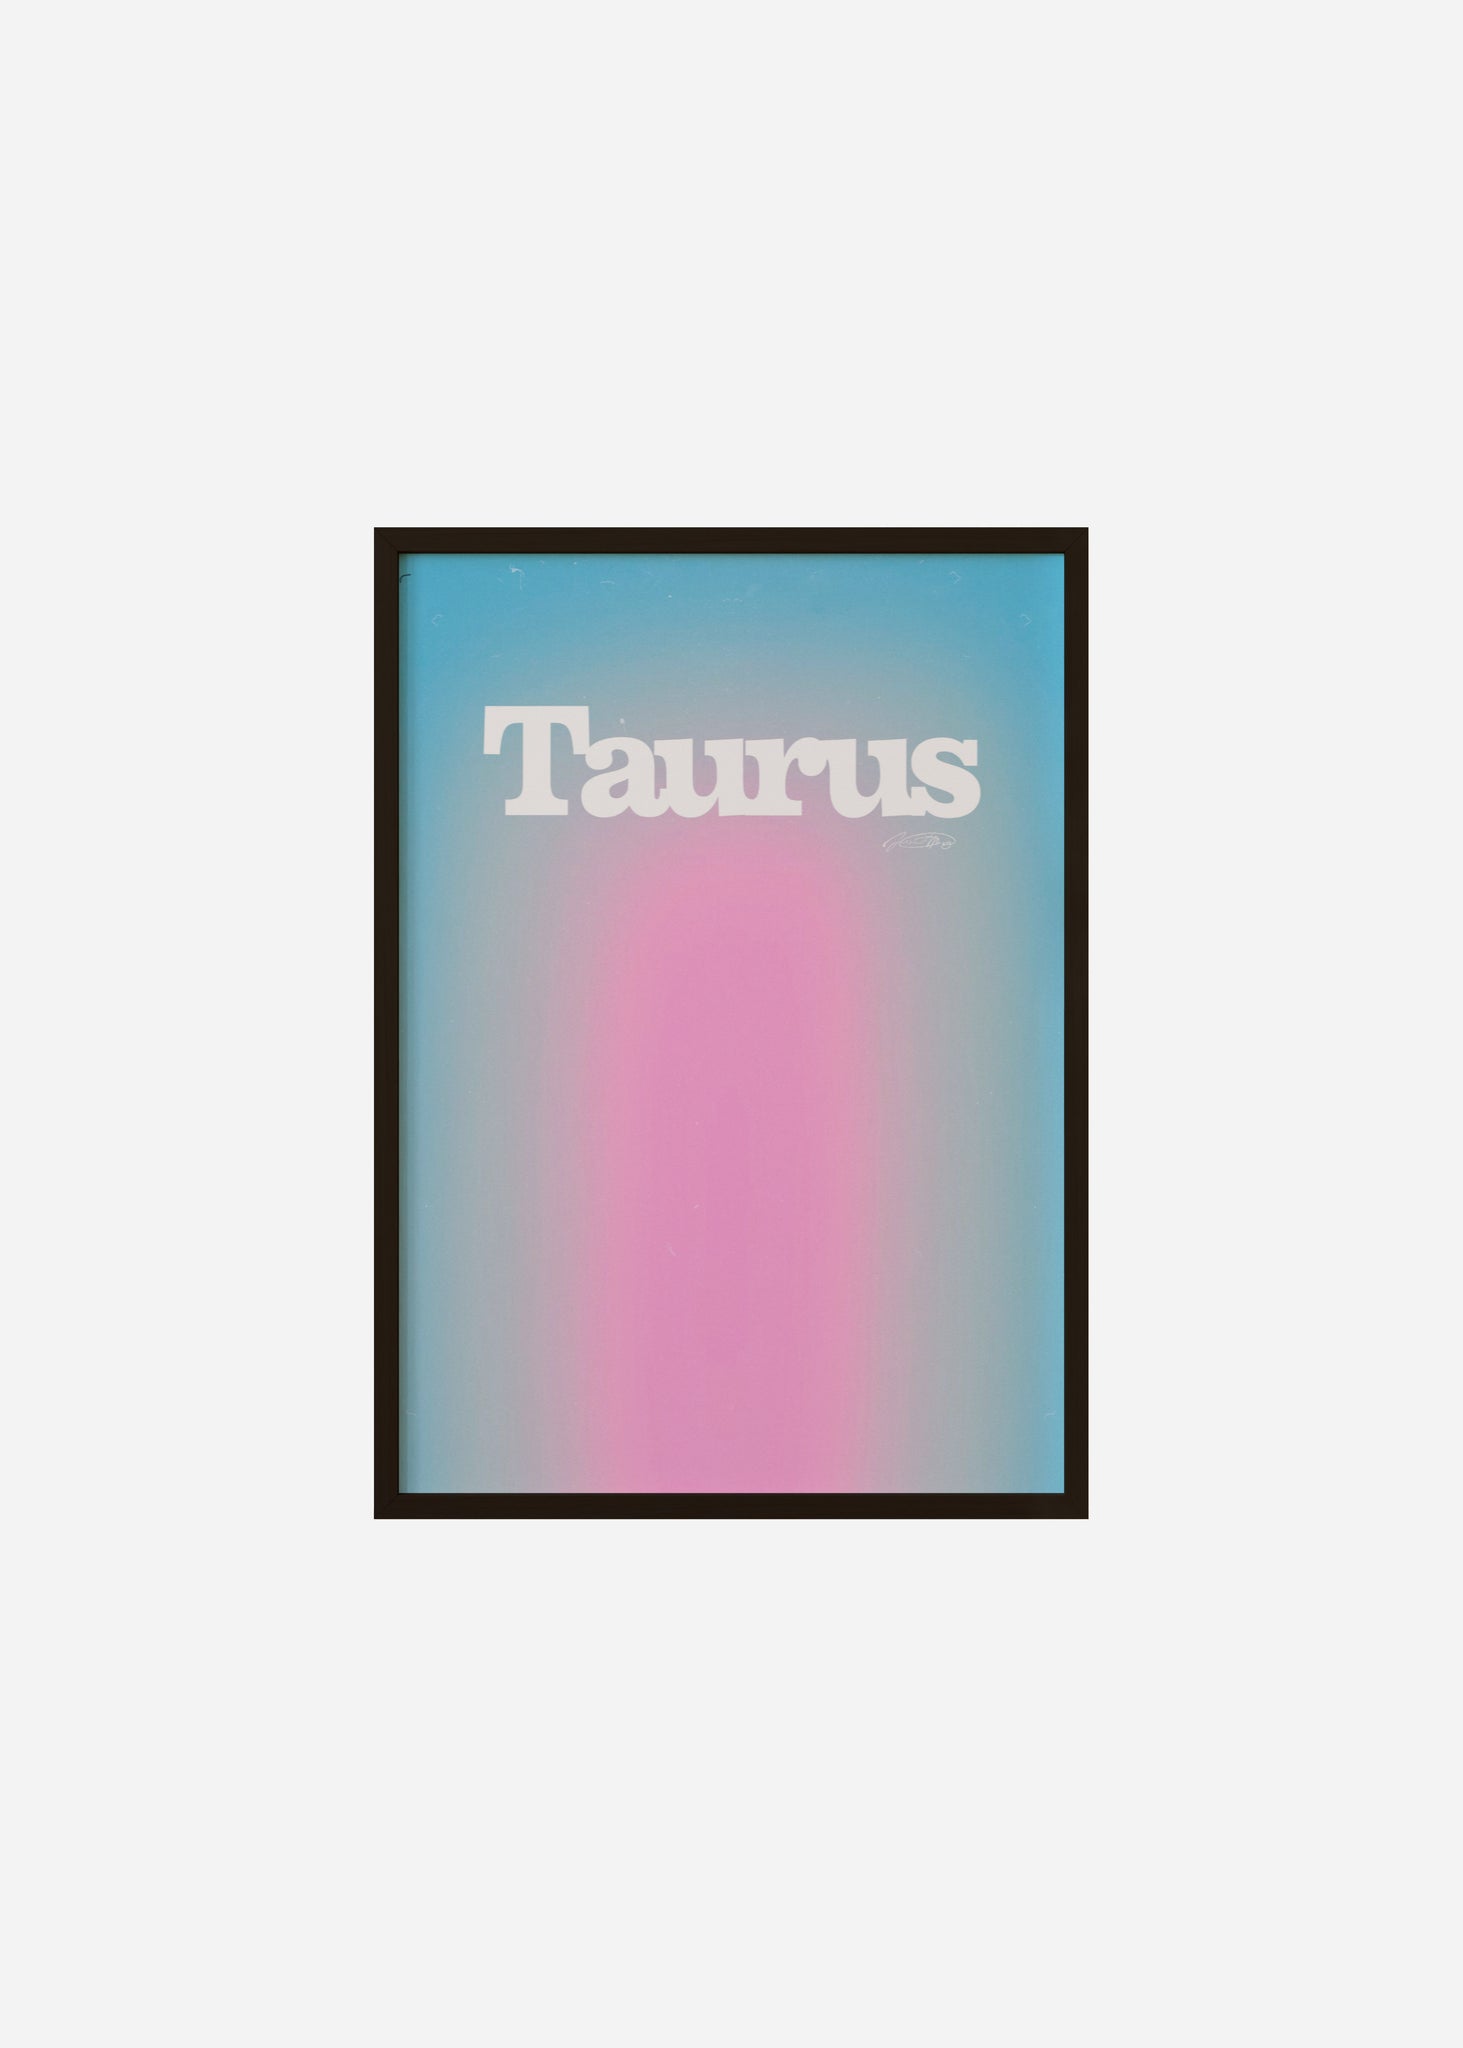 Taurus Aura Framed Print